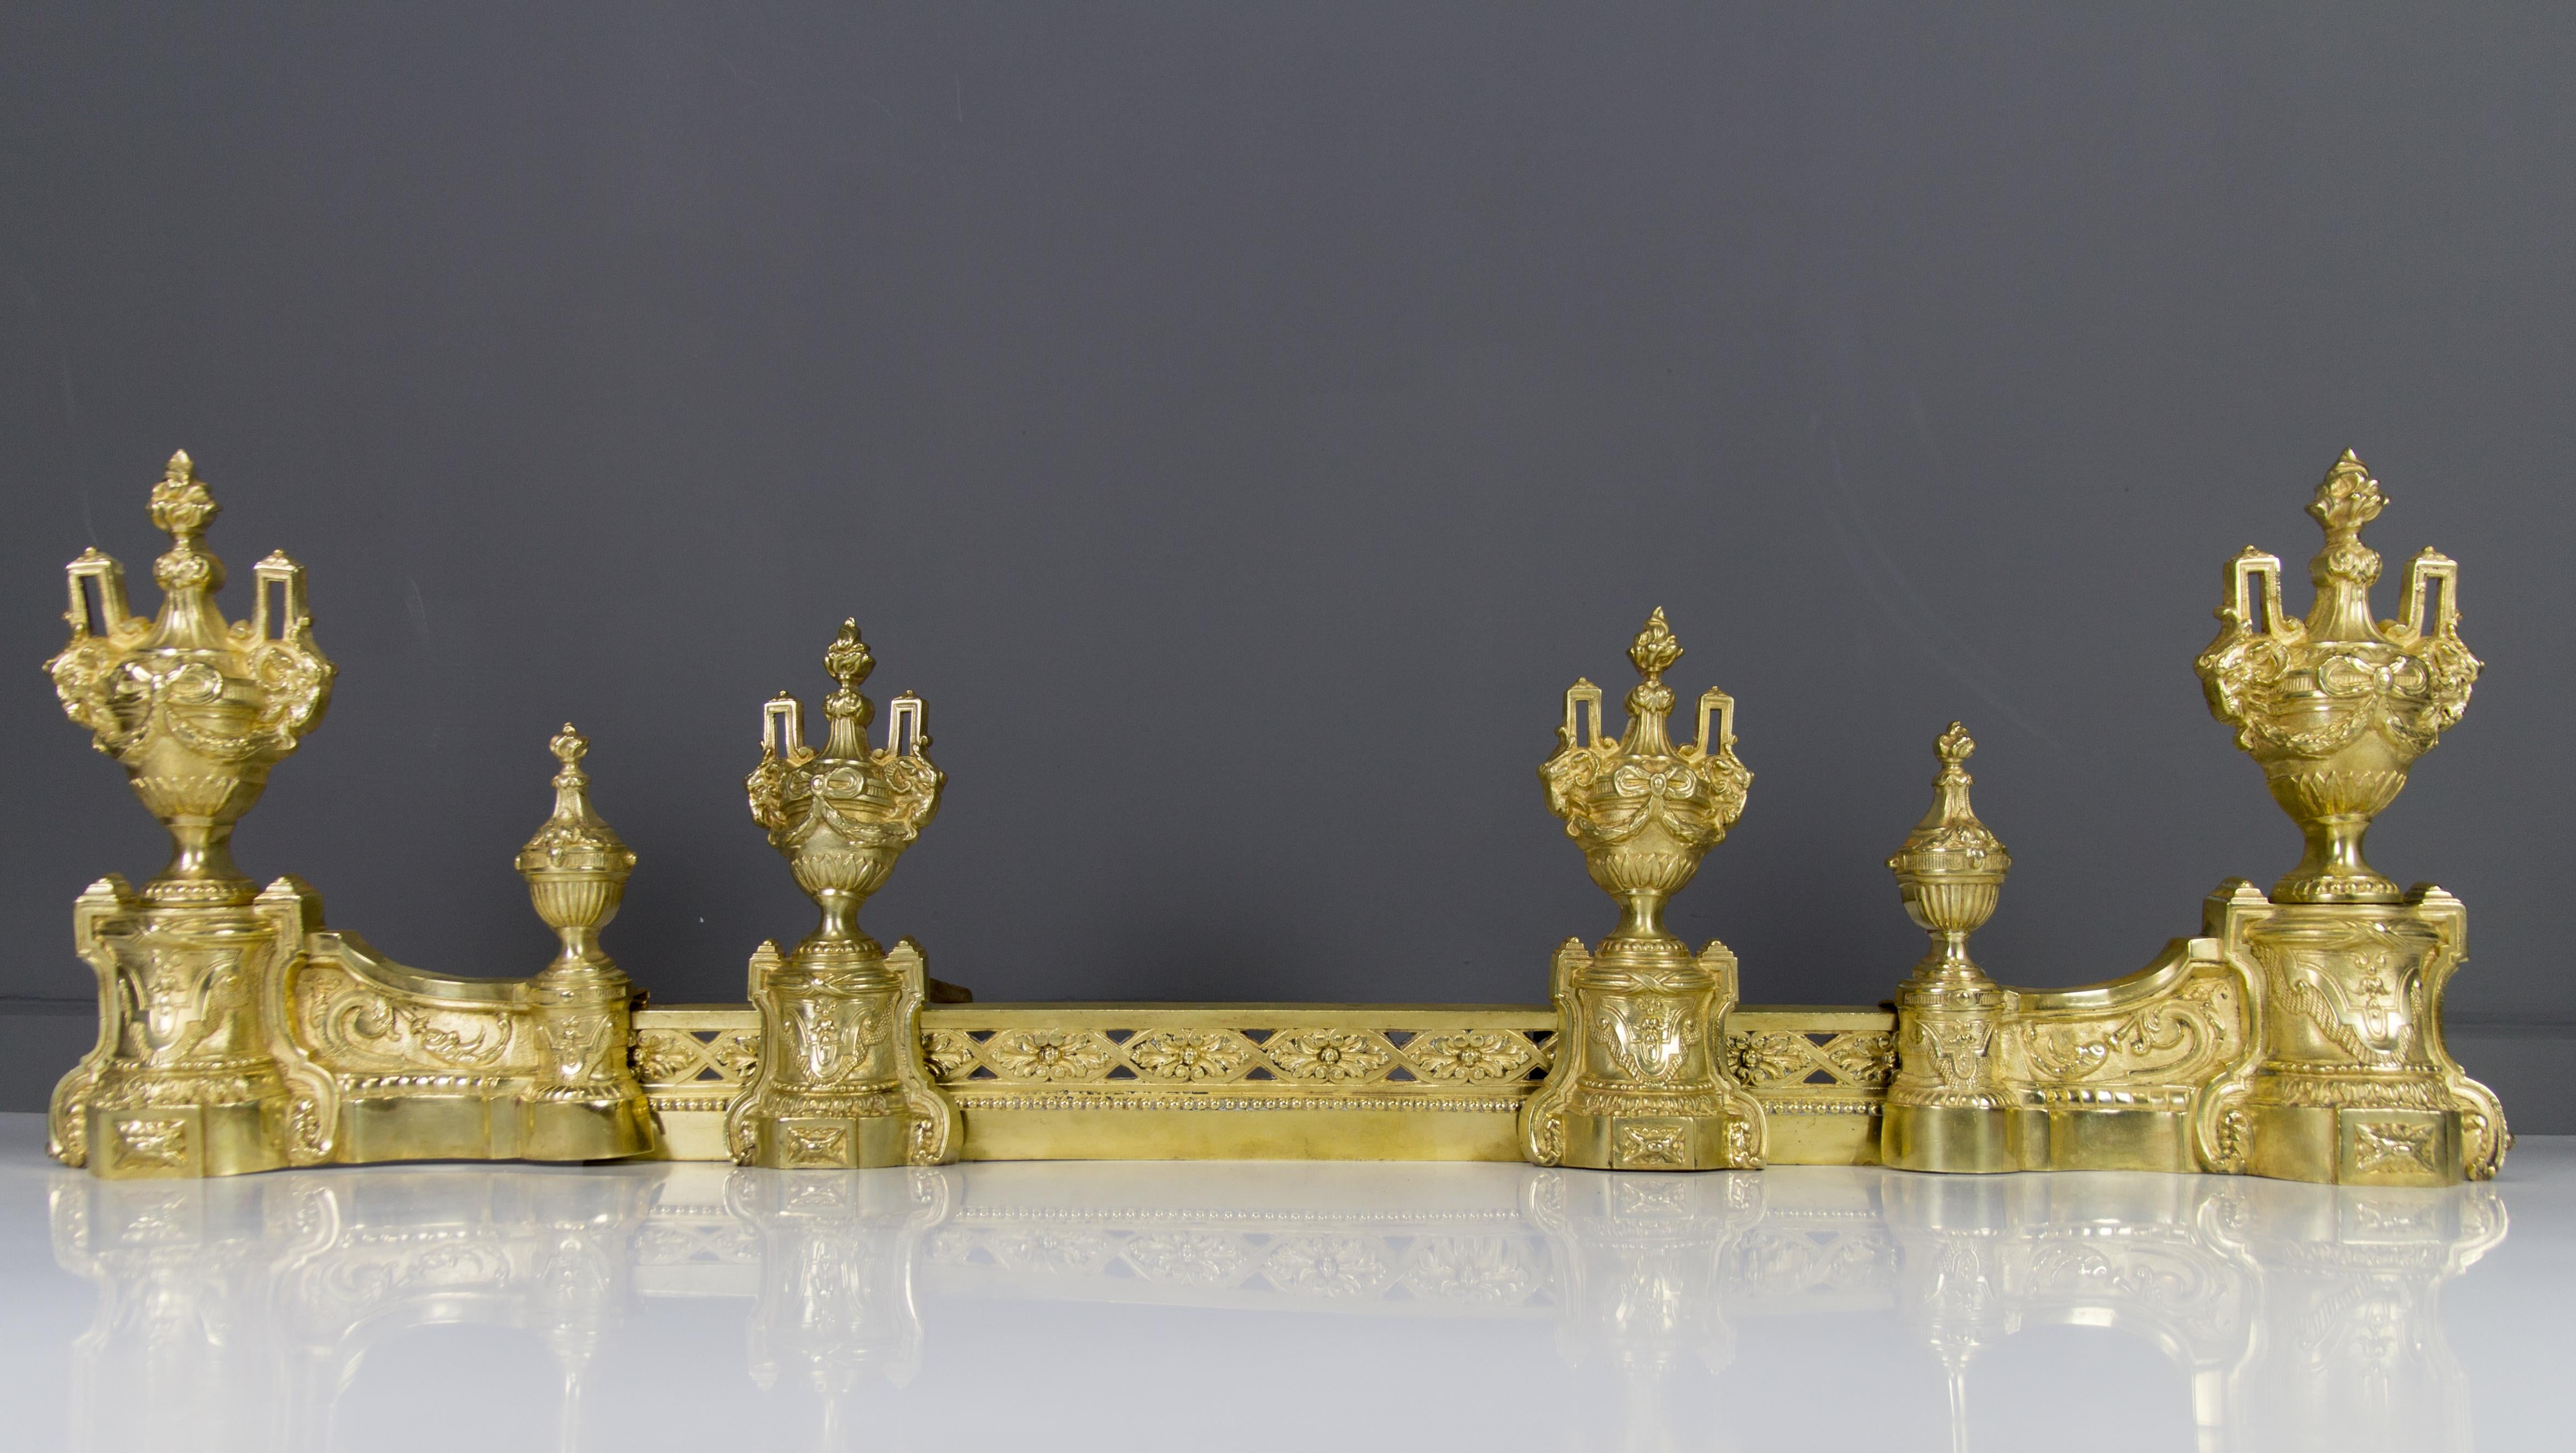 Diese beeindruckenden Bronze-Andirons im französischen Louis-XVI-Stil mit ihren originalen Schutzblechen stammen aus der zweiten Hälfte des 19. Jahrhunderts und wurden von dem berühmten französischen Bronzier Charles Casier hergestellt. Reich